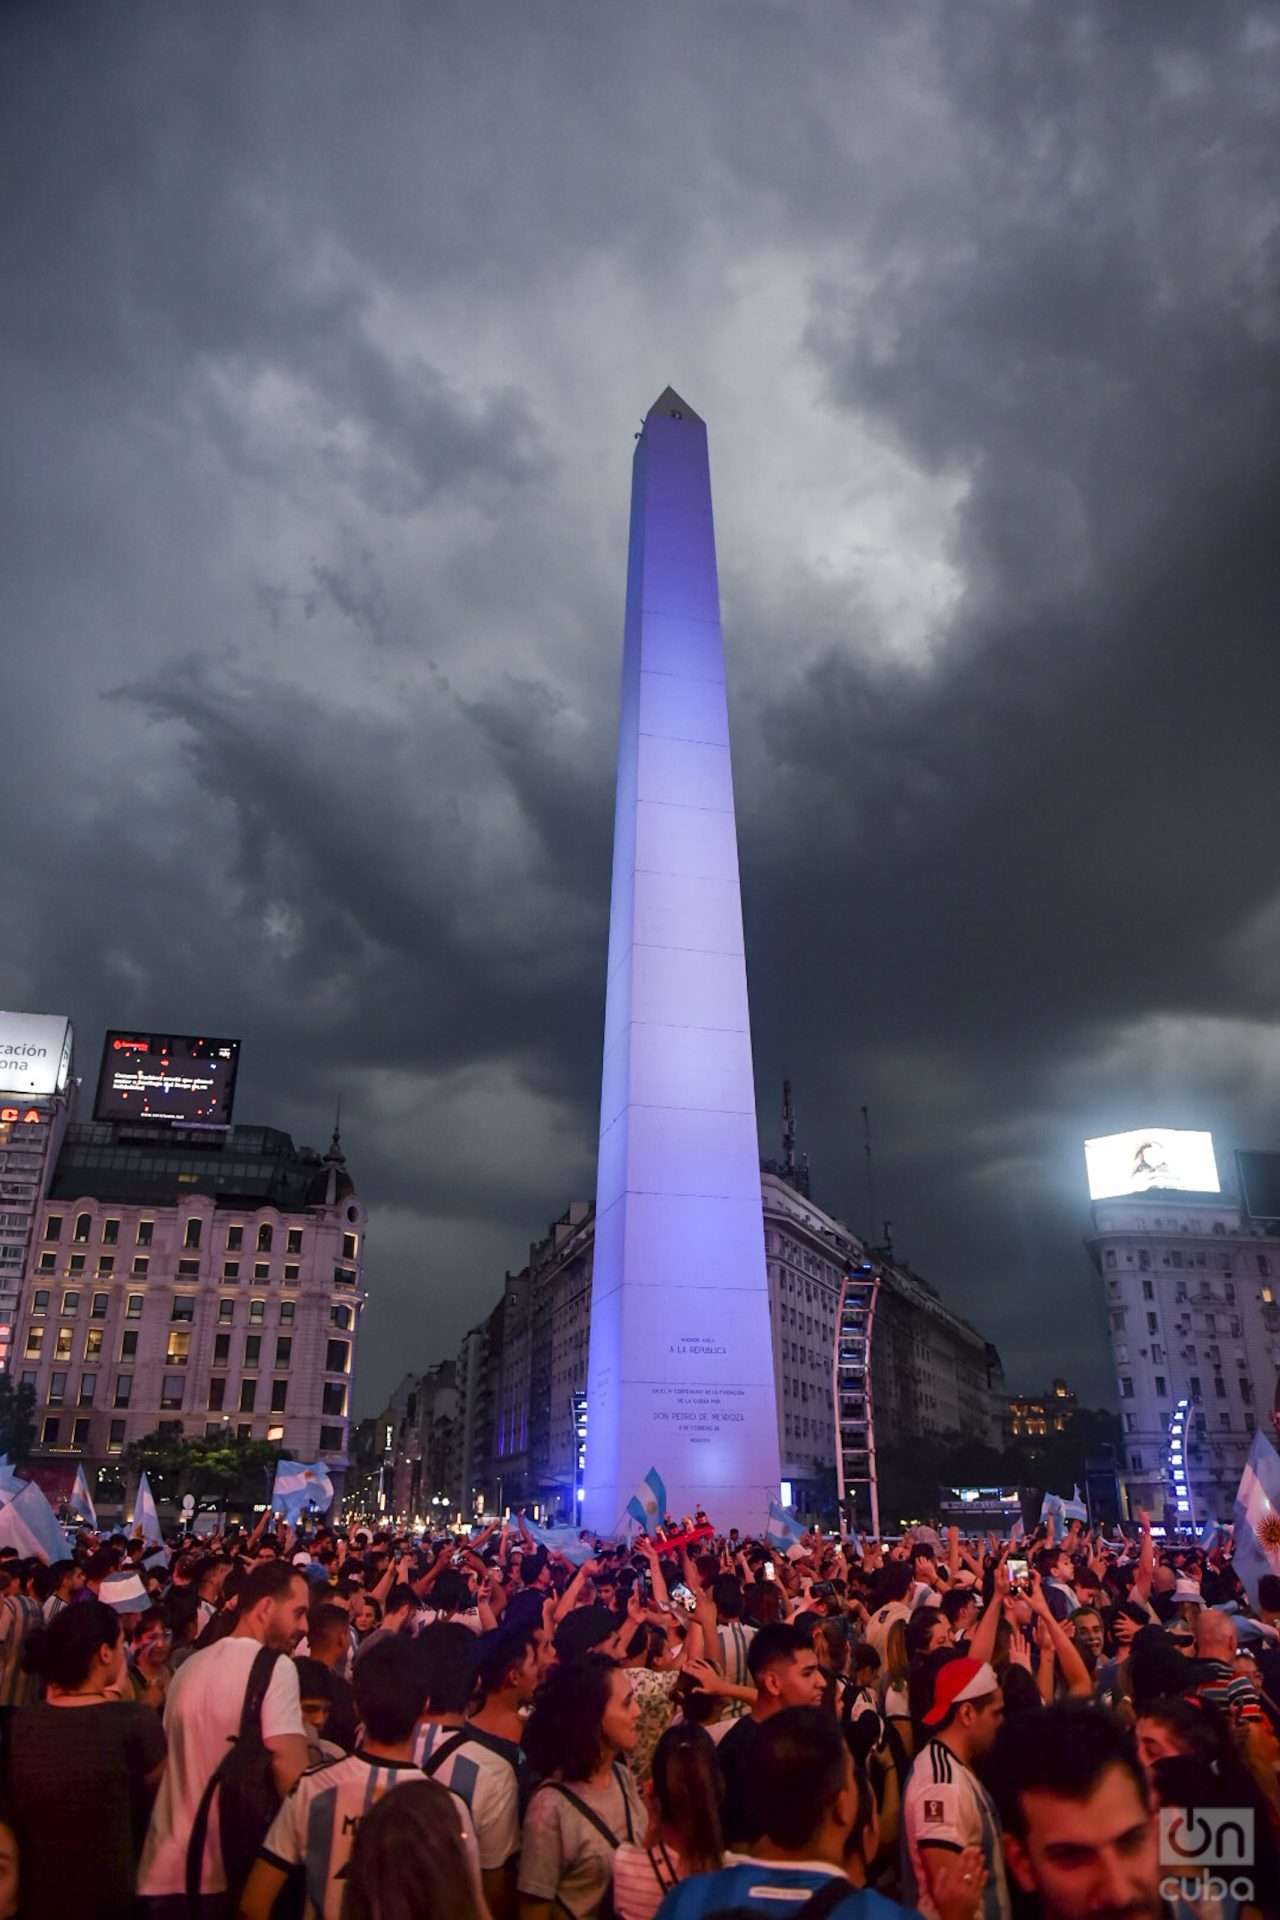 En este Mundial ya es tradición Argentina salir a festejar al Obelisco cada triunfo de Argentina. Foto: Kaloian.